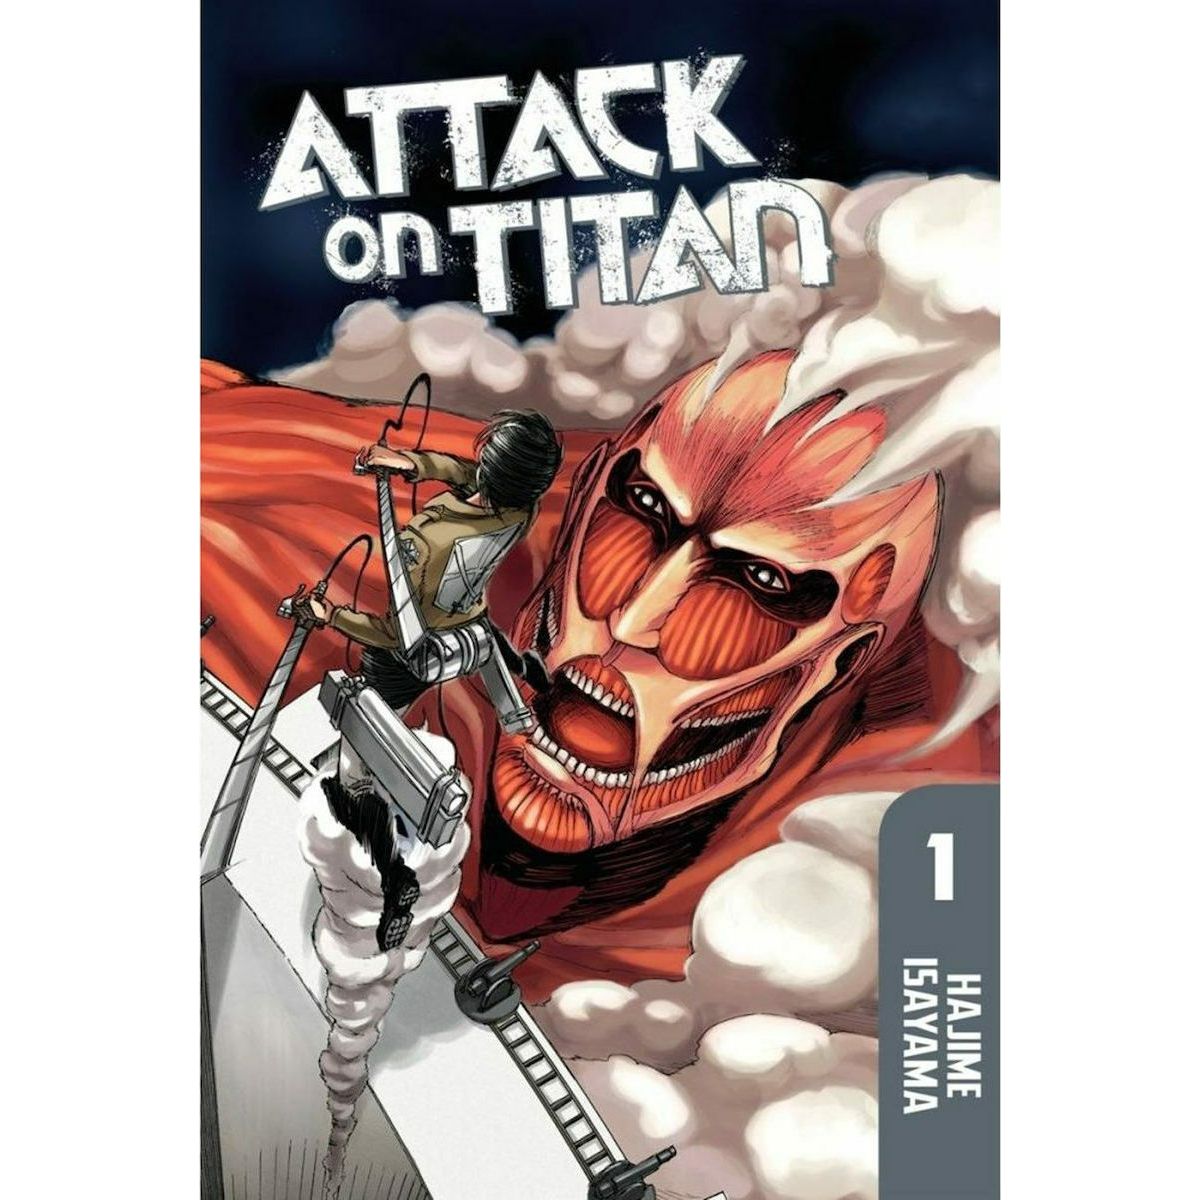 white-attack-on-titan-vol1